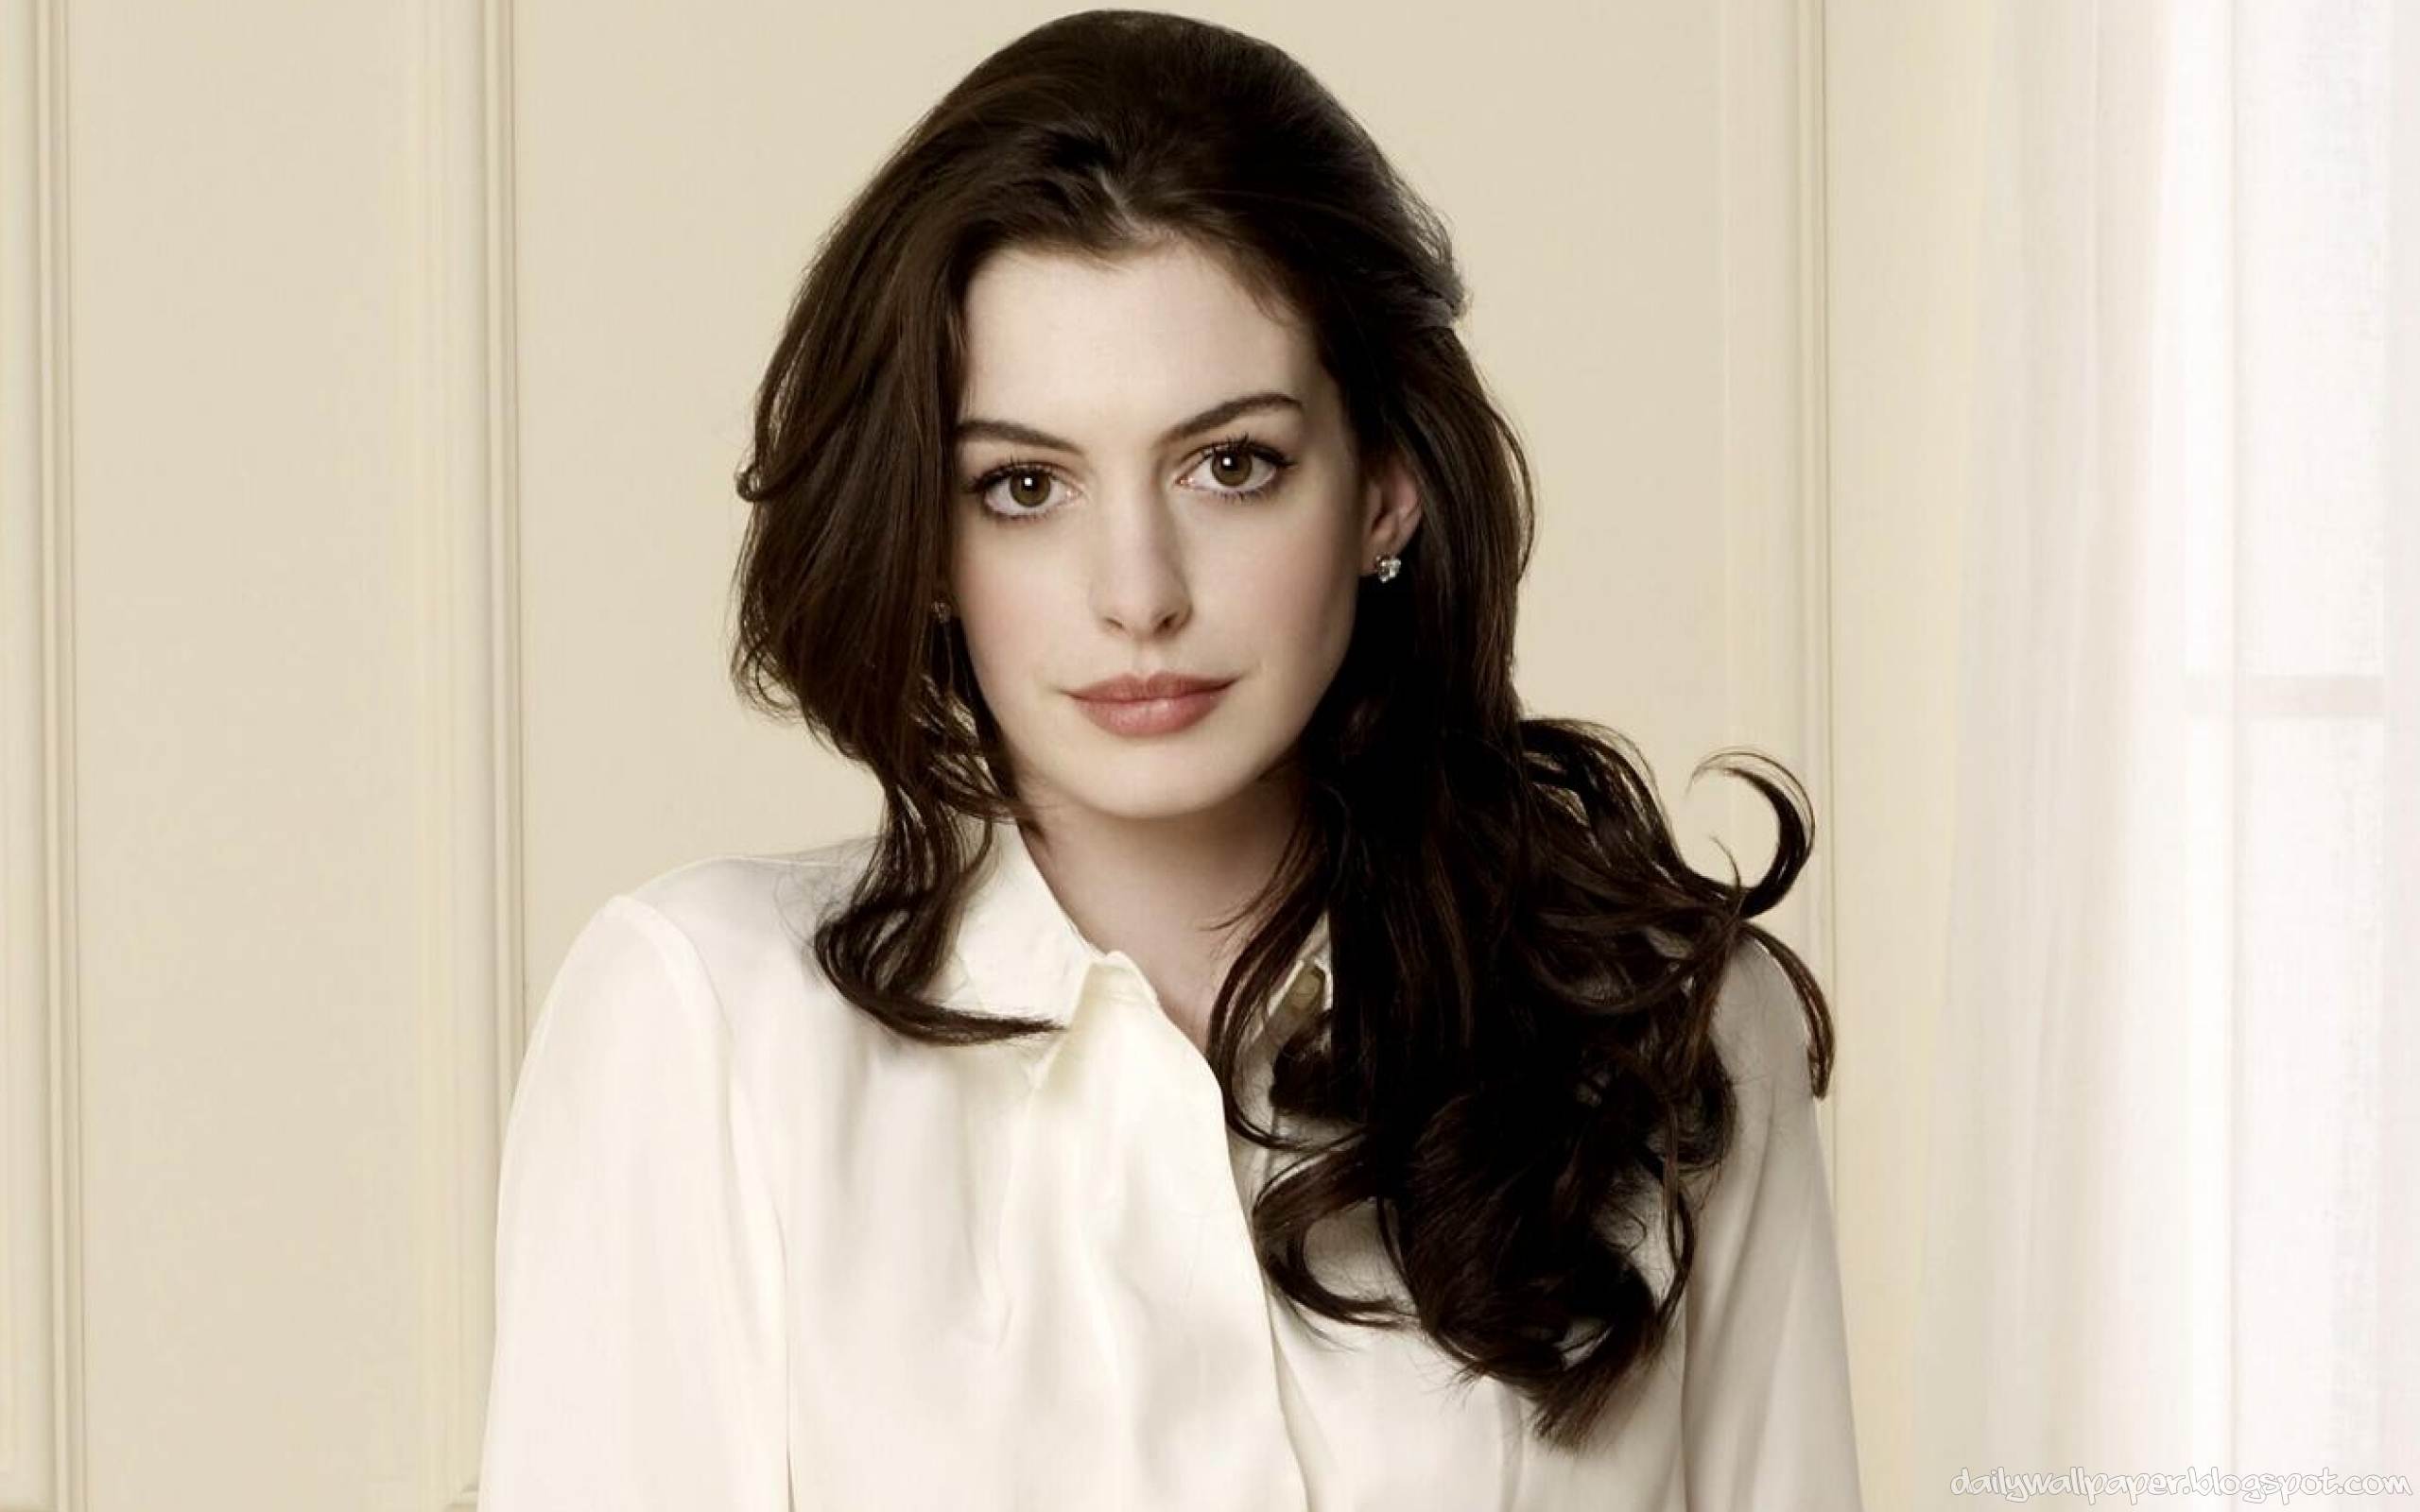 ELLE Beauty Calendar: Cảm hứng trang điểm cùng nữ diễn viên Anne Hathaway (13/11 - 19/11)